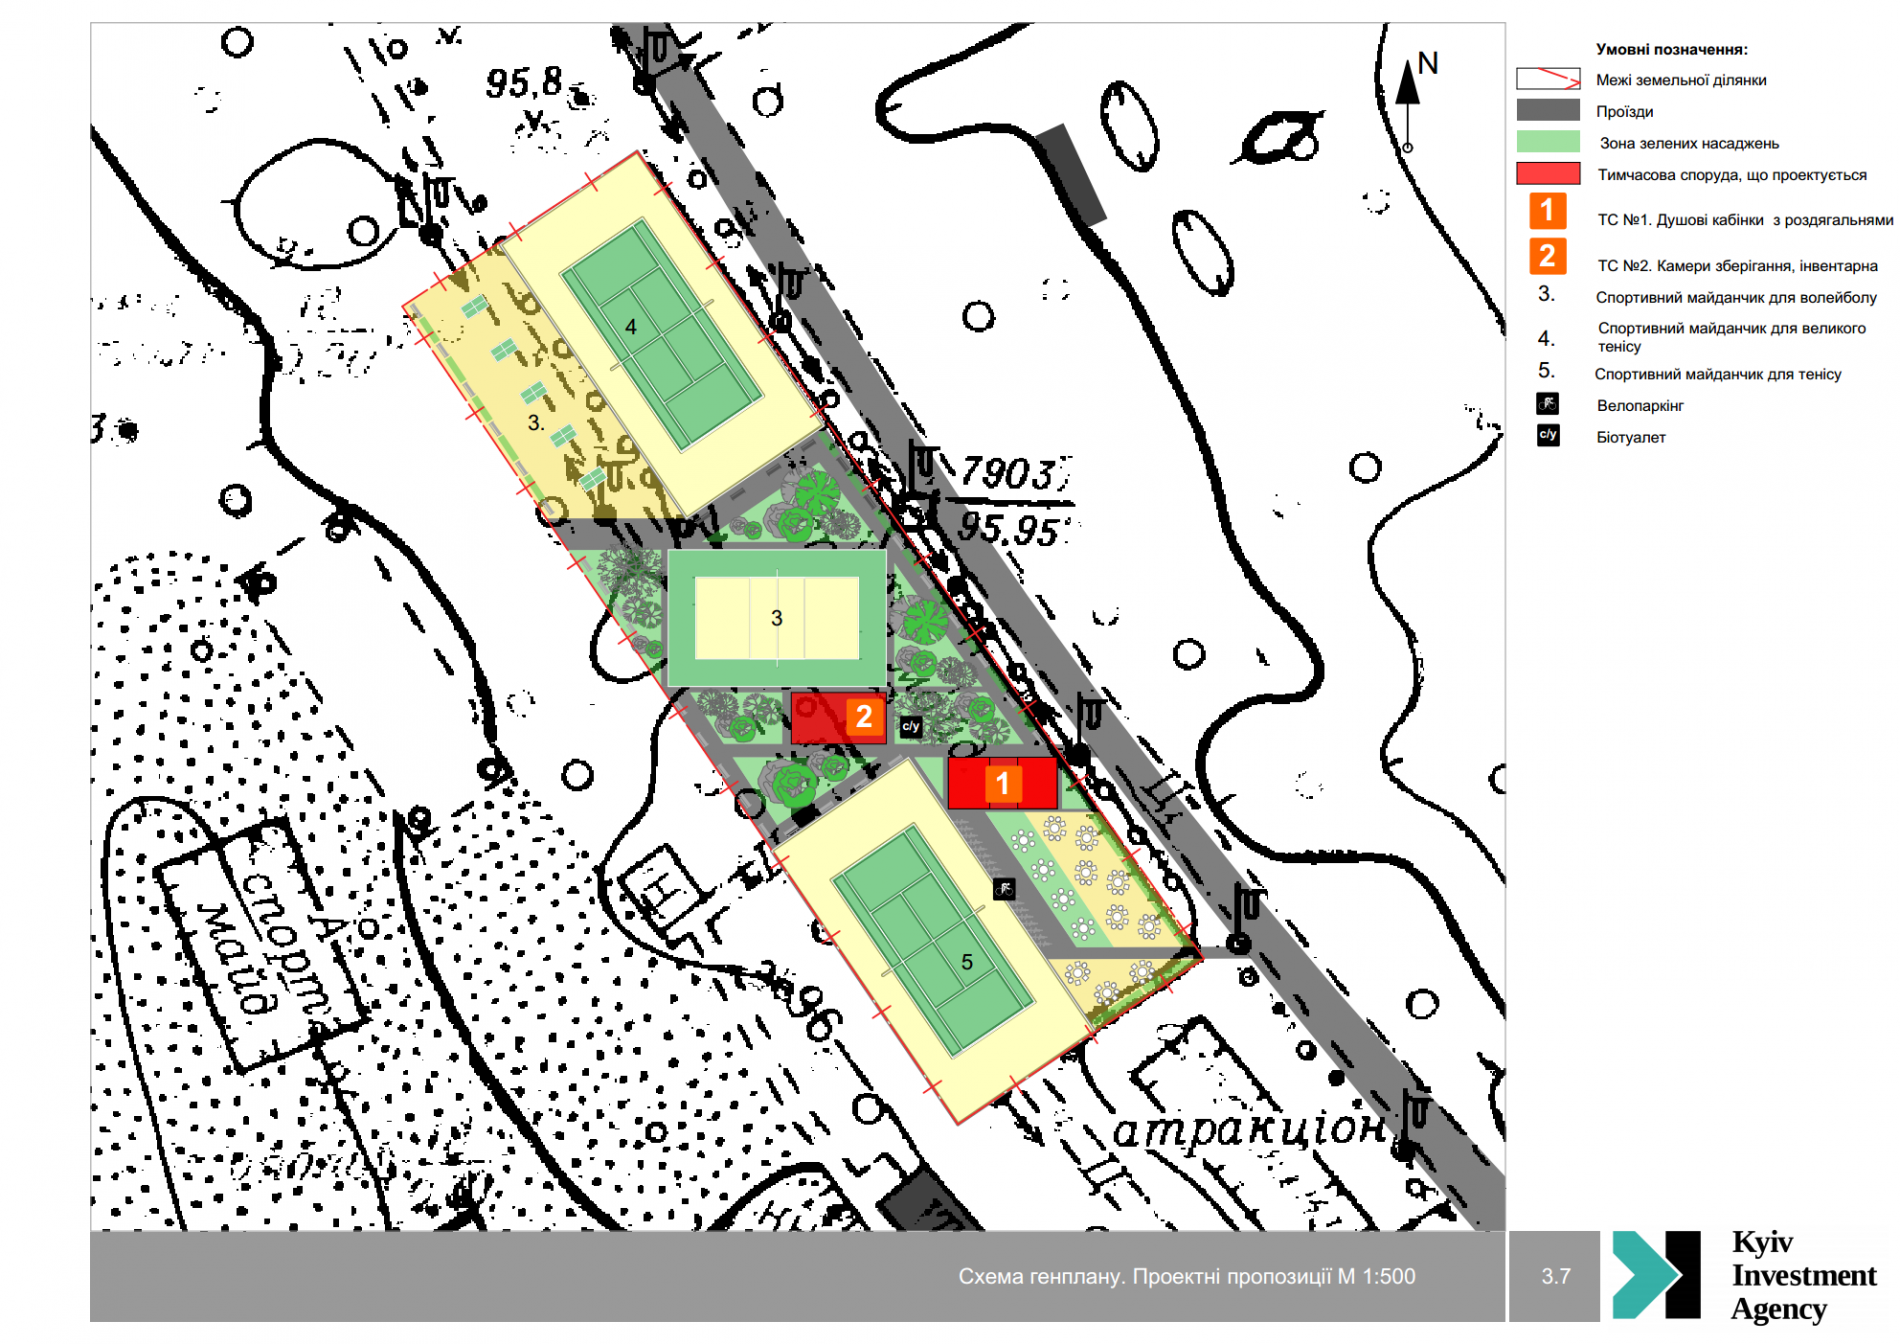 Створення зони спортивних майданчиків з вело та інформаційним хабом на території Труханового острова